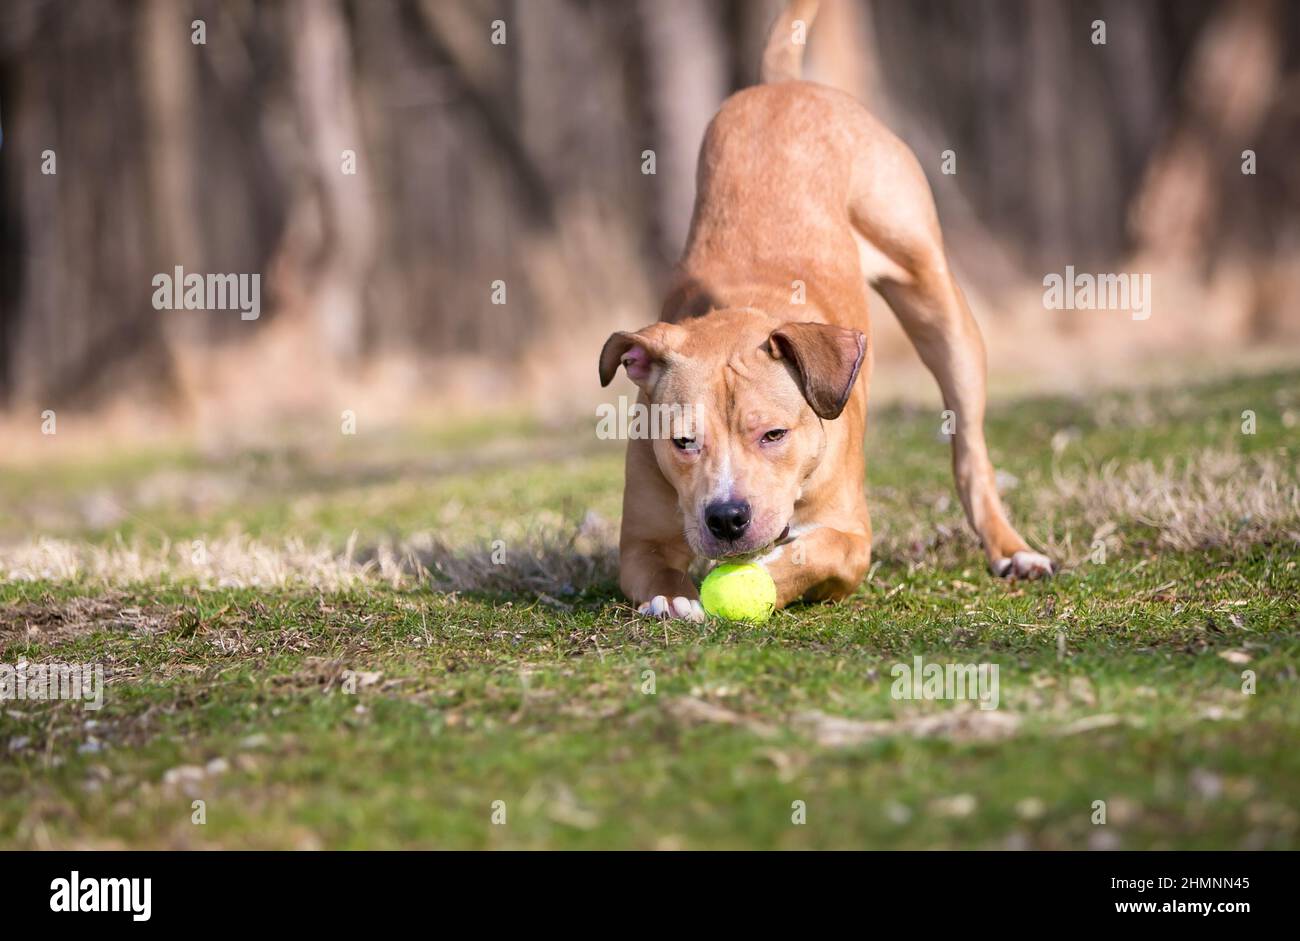 Un perro de raza mixta Retriever x Pit Bull Terrier en una posición de arco de juego con una bola entre sus patas Foto de stock